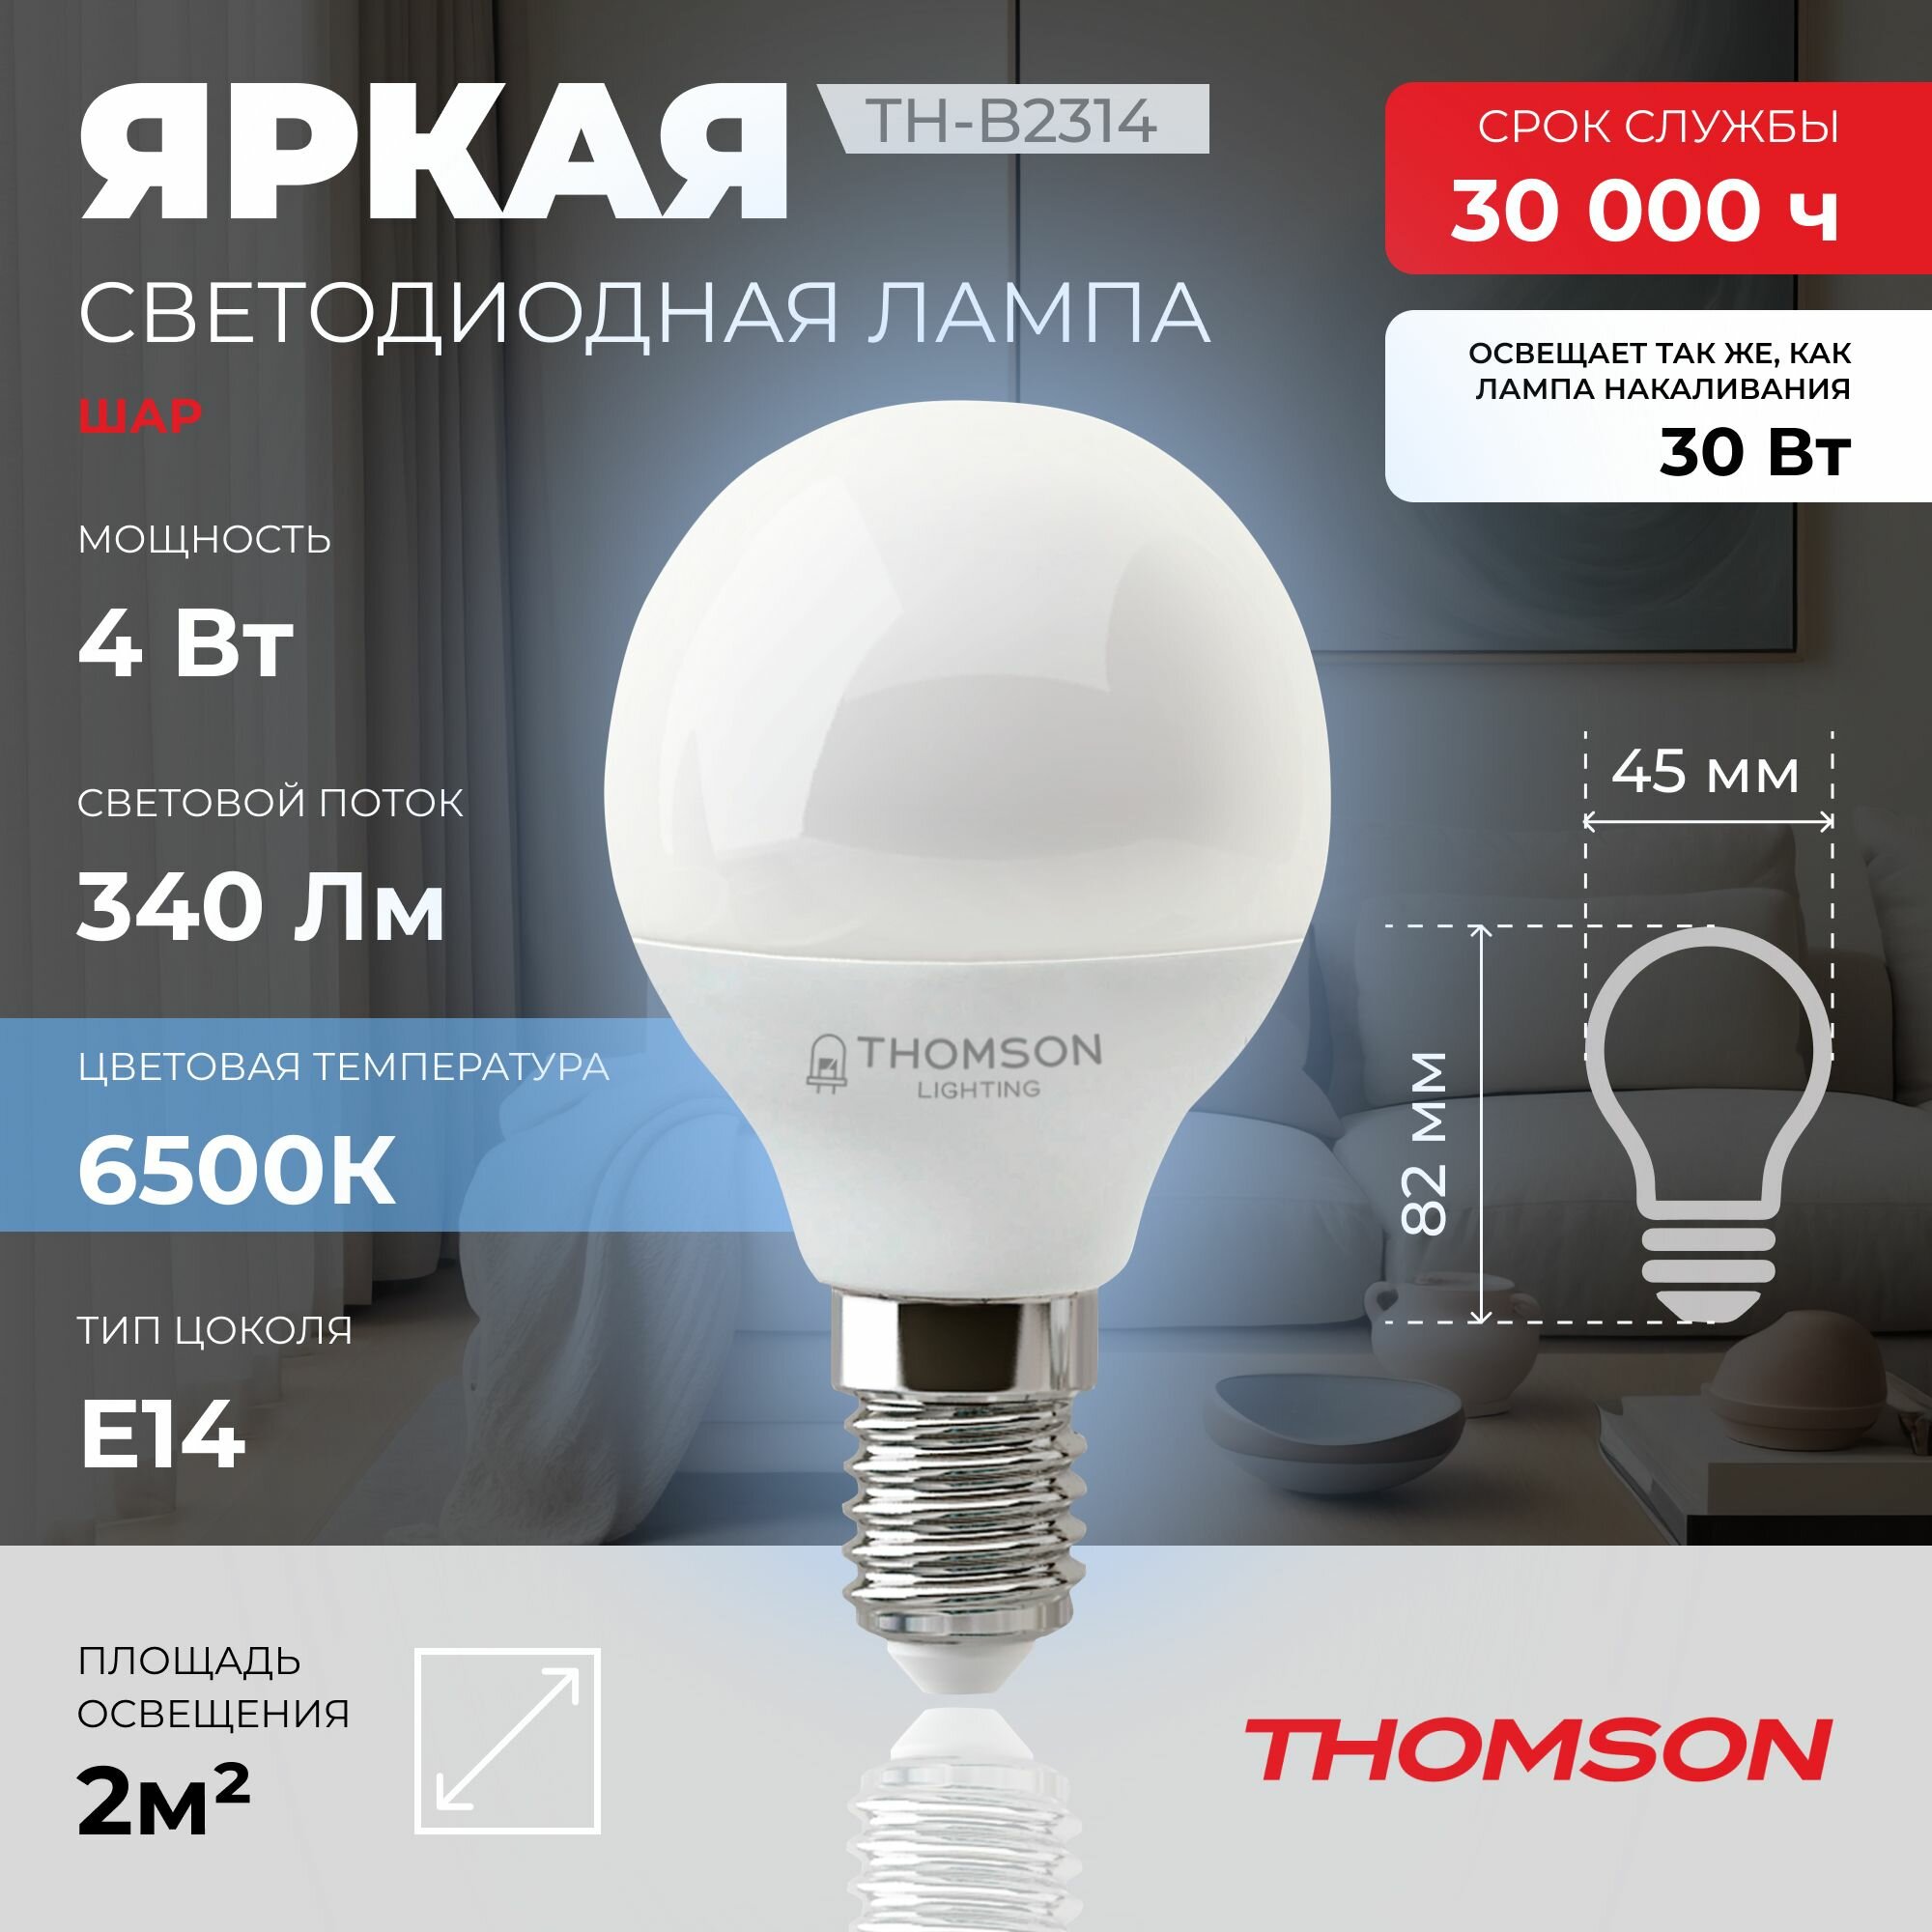 Лампочка Thomson TH-B2314 4 Вт, E14, 6500K, шар, холодный белый свет